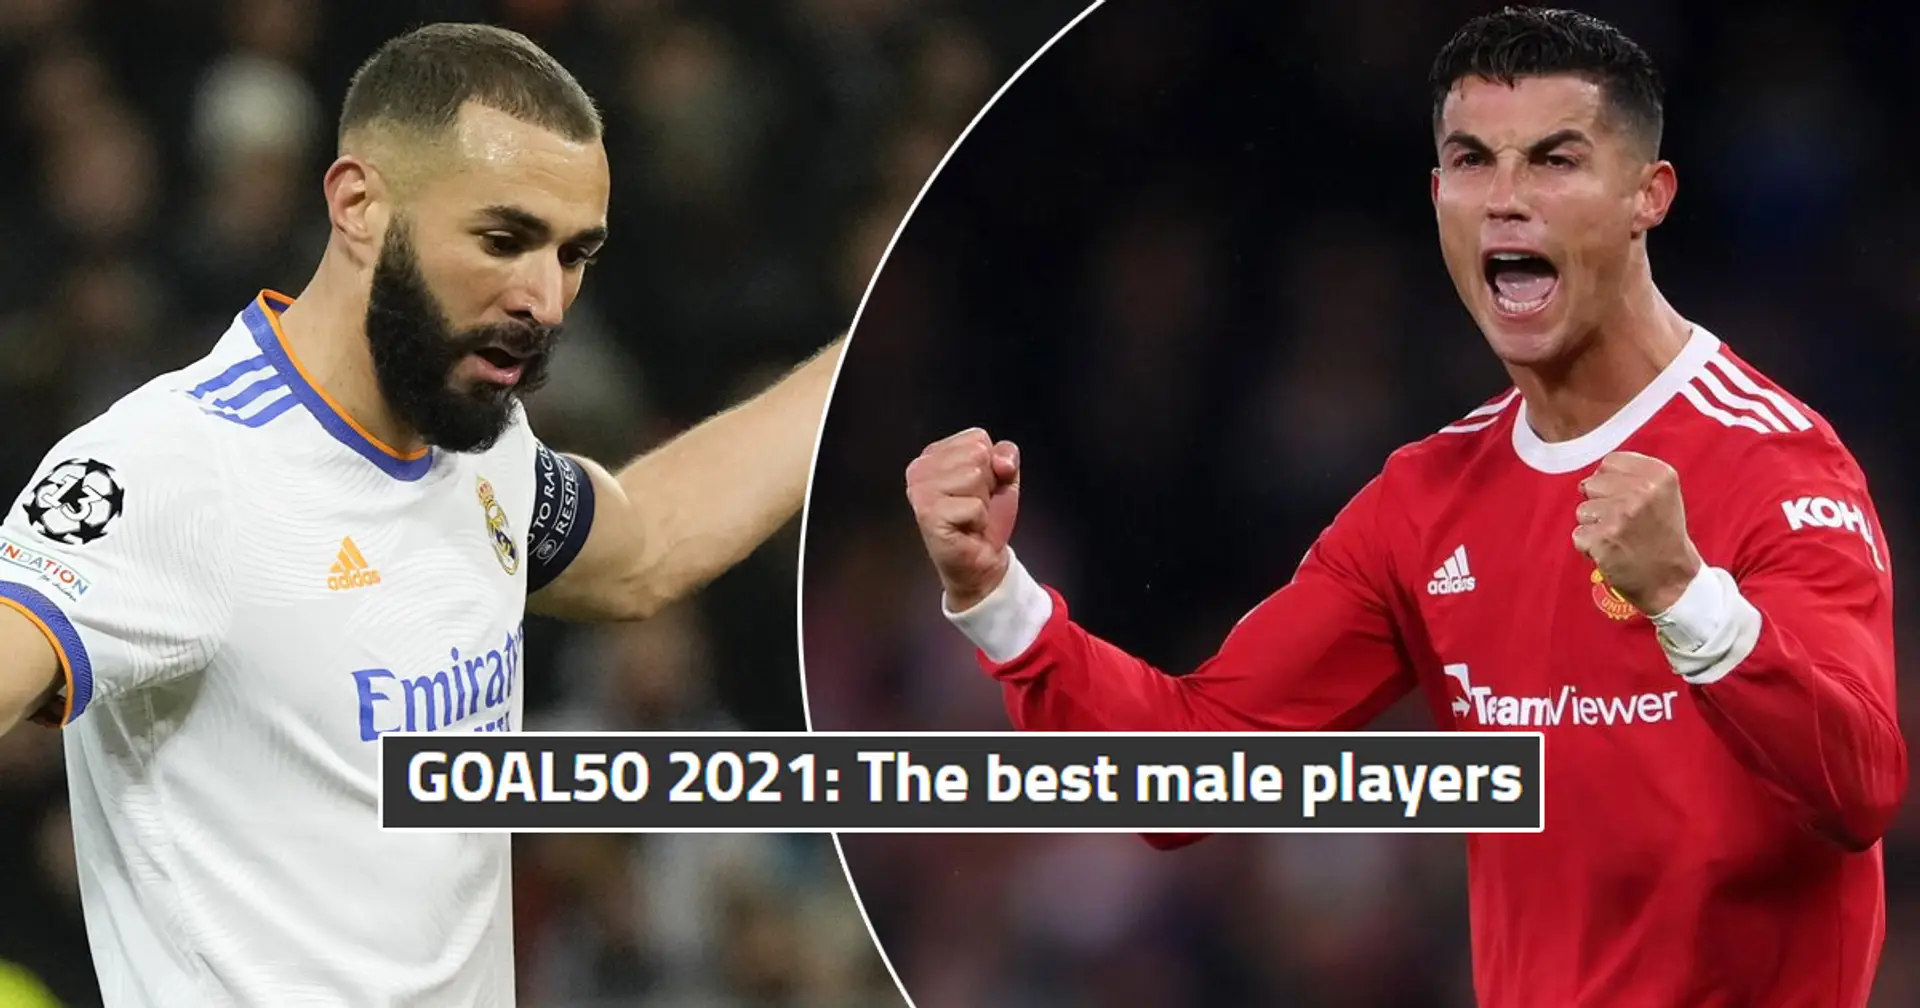 Ronaldo élu deuxième meilleur joueur en 2021 par les fans, Benzema hors du top 5